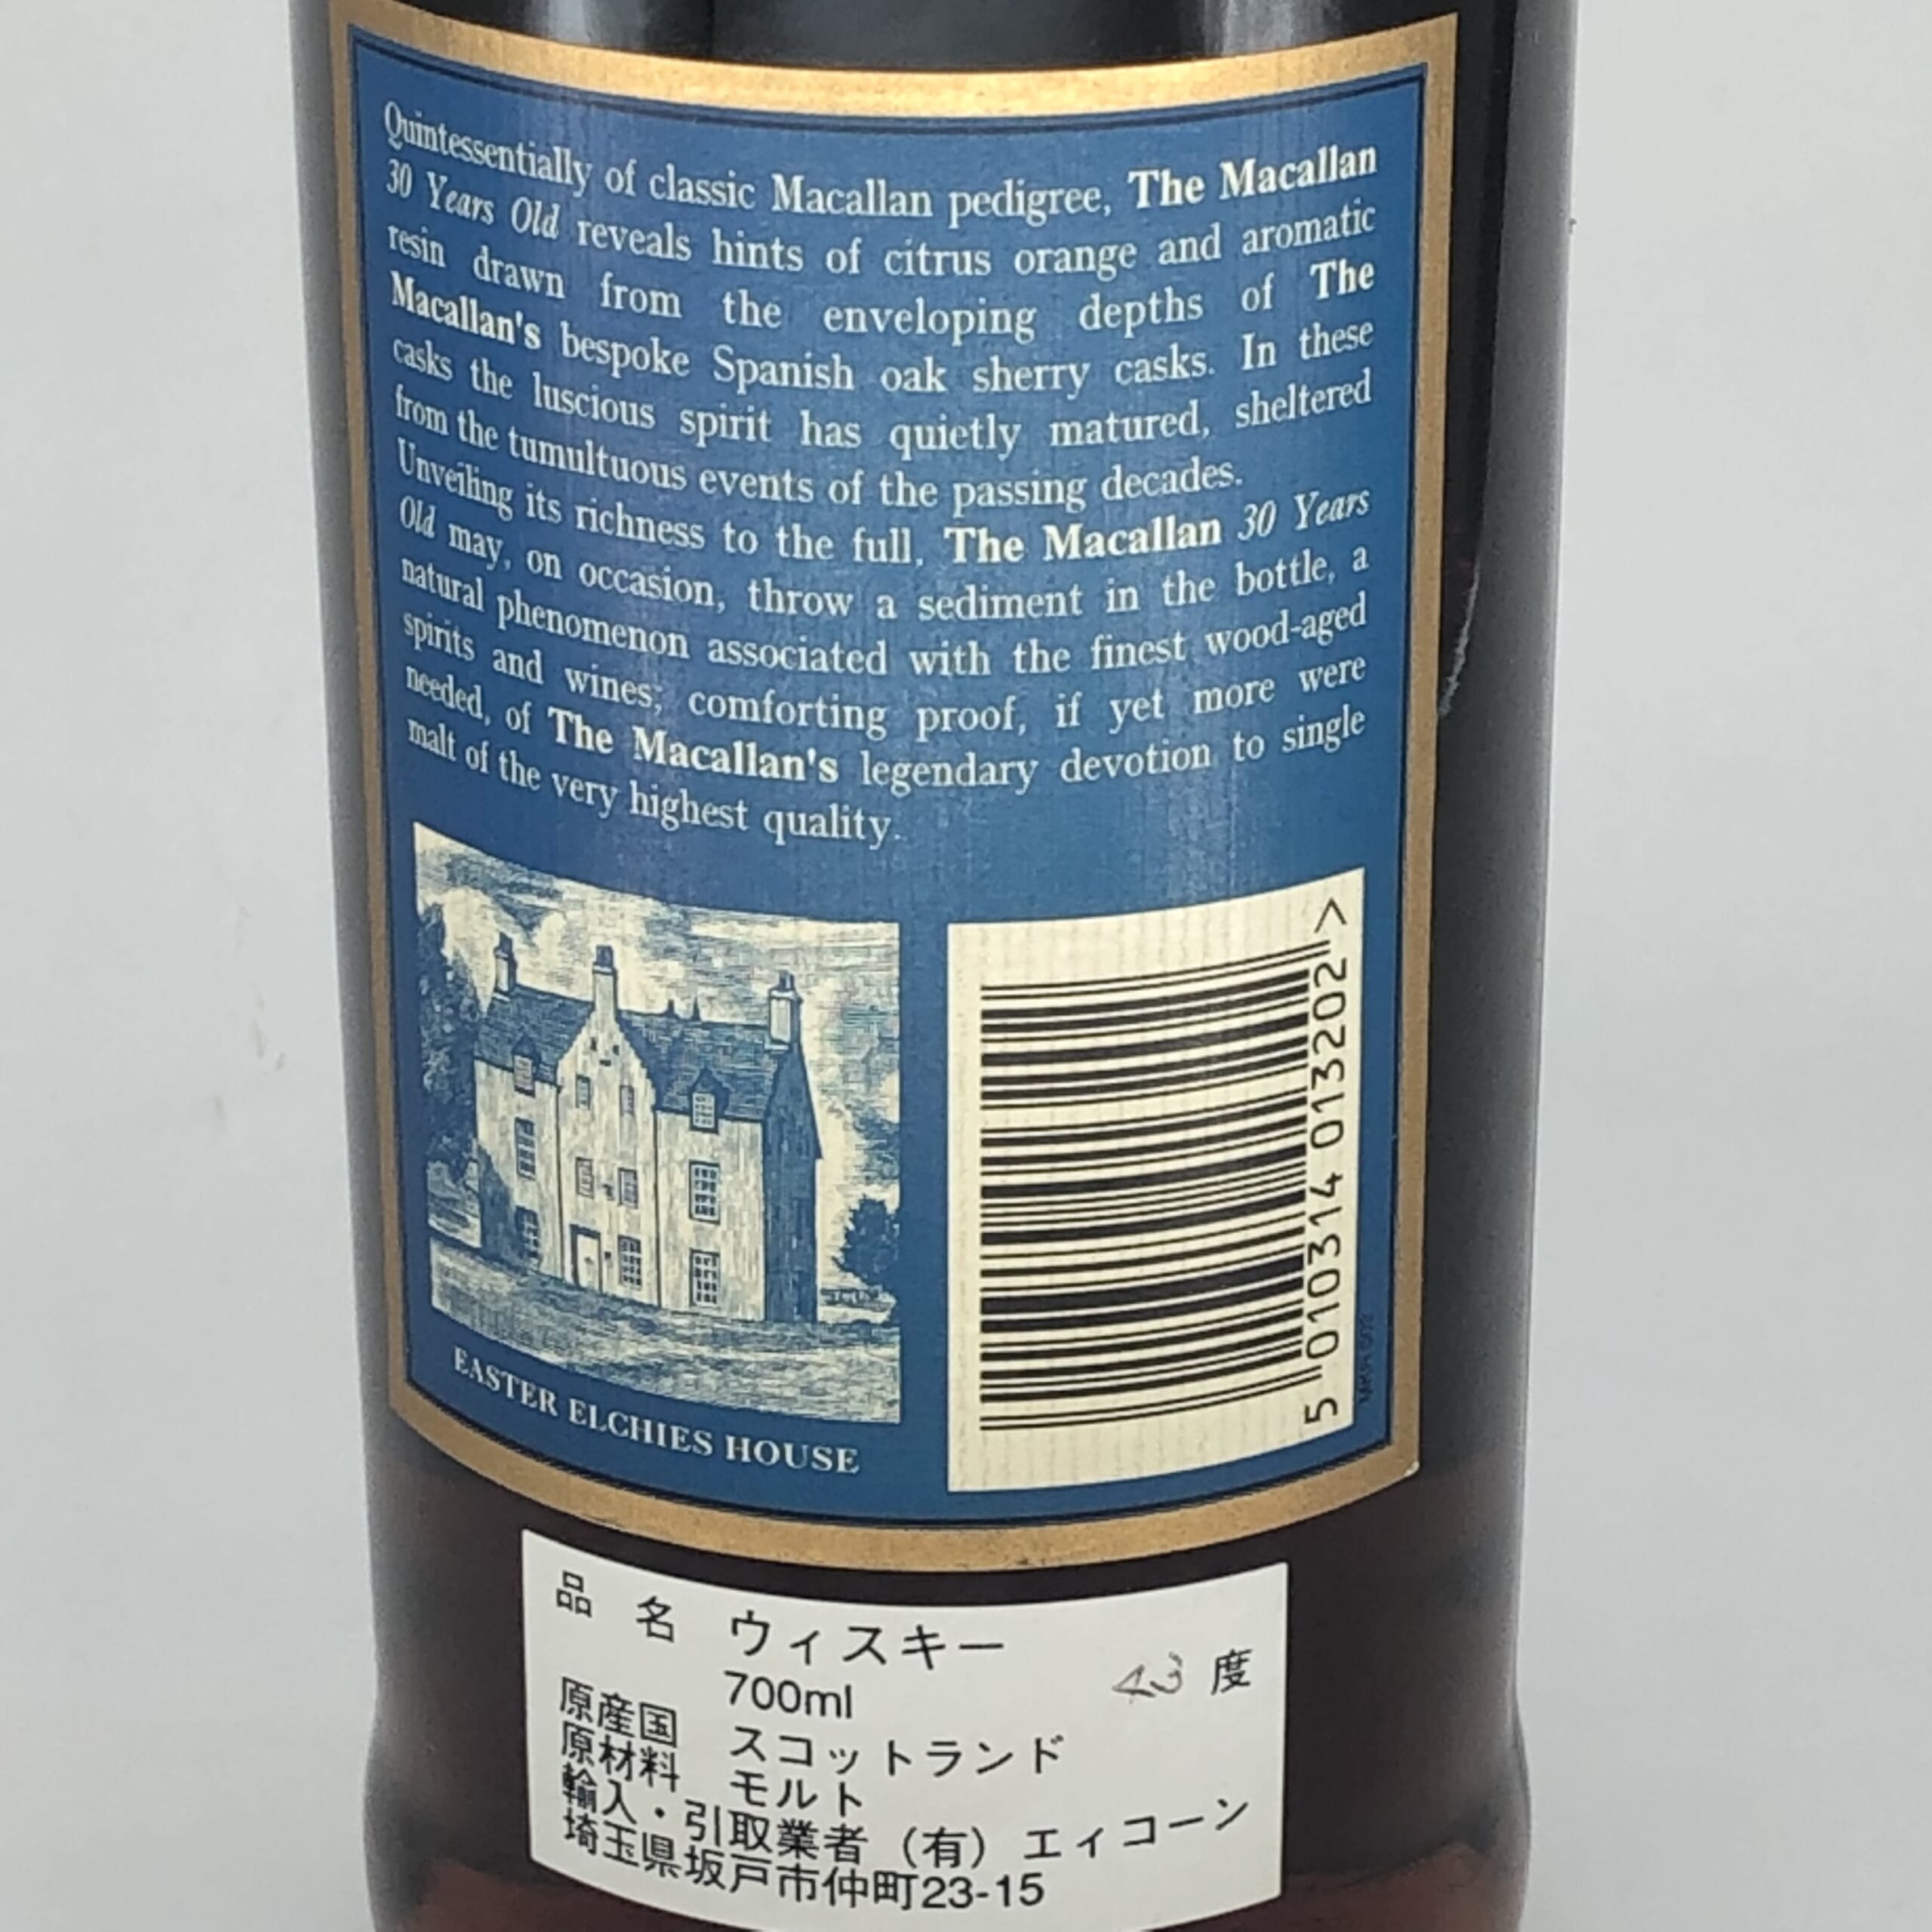 マッカラン30年ブルーラベル - オールド ビンテージ ウイスキー専門店 